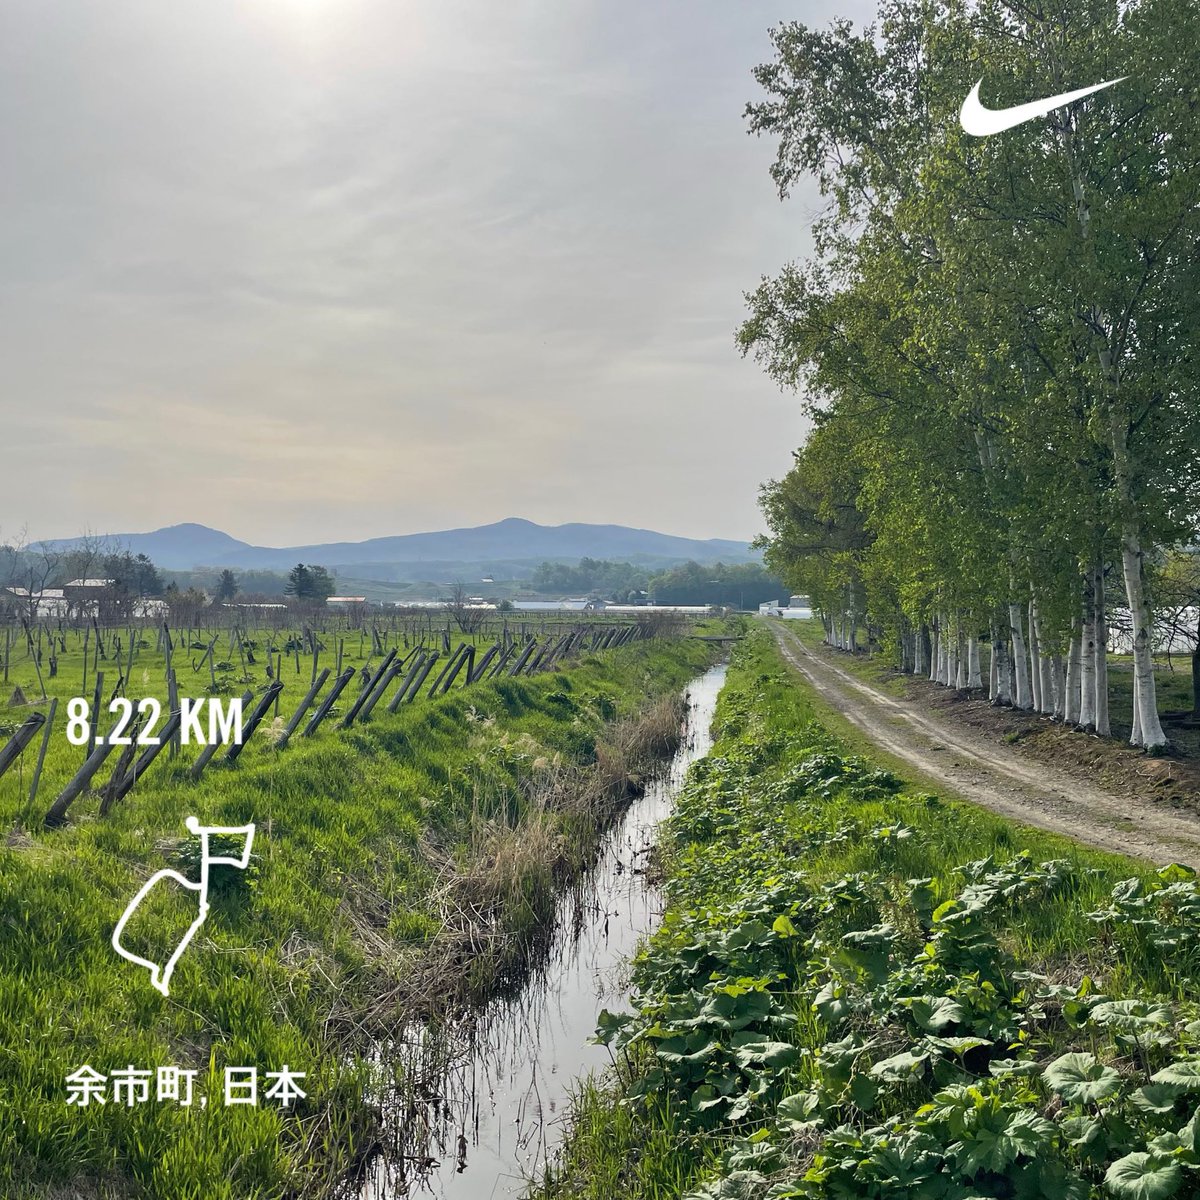 涼しい時間のウチにラン。
なんか脚が重い。一昨日の筋肉痛からなら大歓迎だけど。
さてこれからウォーキング🚶‍♀️
#MorningRuns #running #beautifulmorning #Hokkaido #朝ラン #ランニング #余市町 #北海道 #sundayjoy